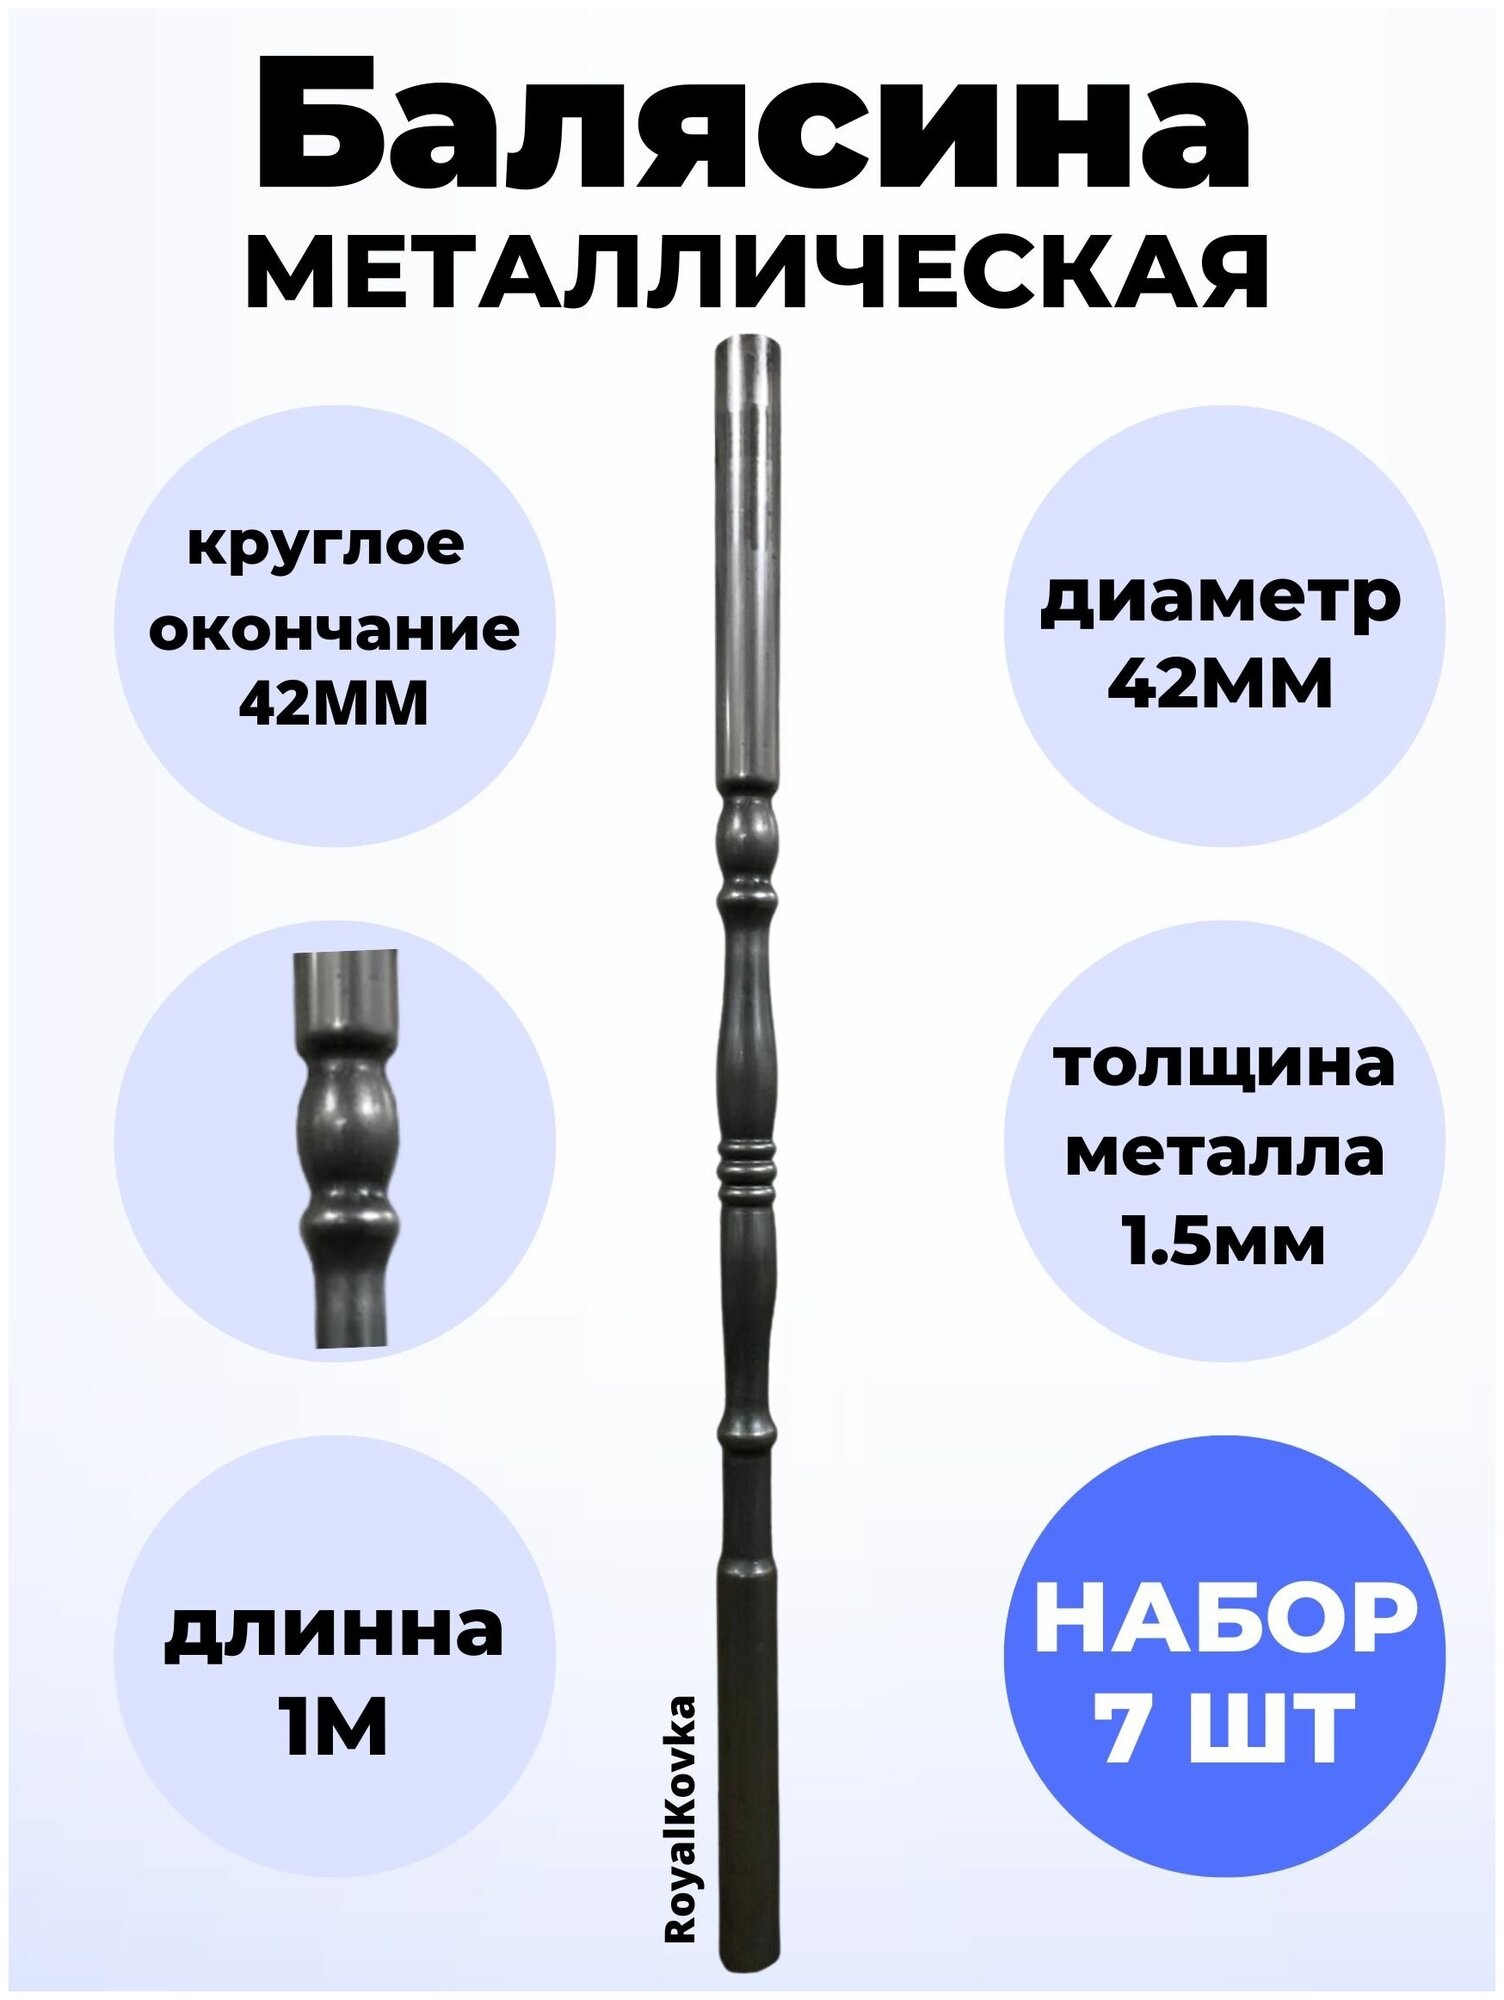 Набор балясин кованных металлических Royal Kovka 7 шт диаметр 42 мм круглые окончания диаметром 42 мм арт. 42.4 КР 7